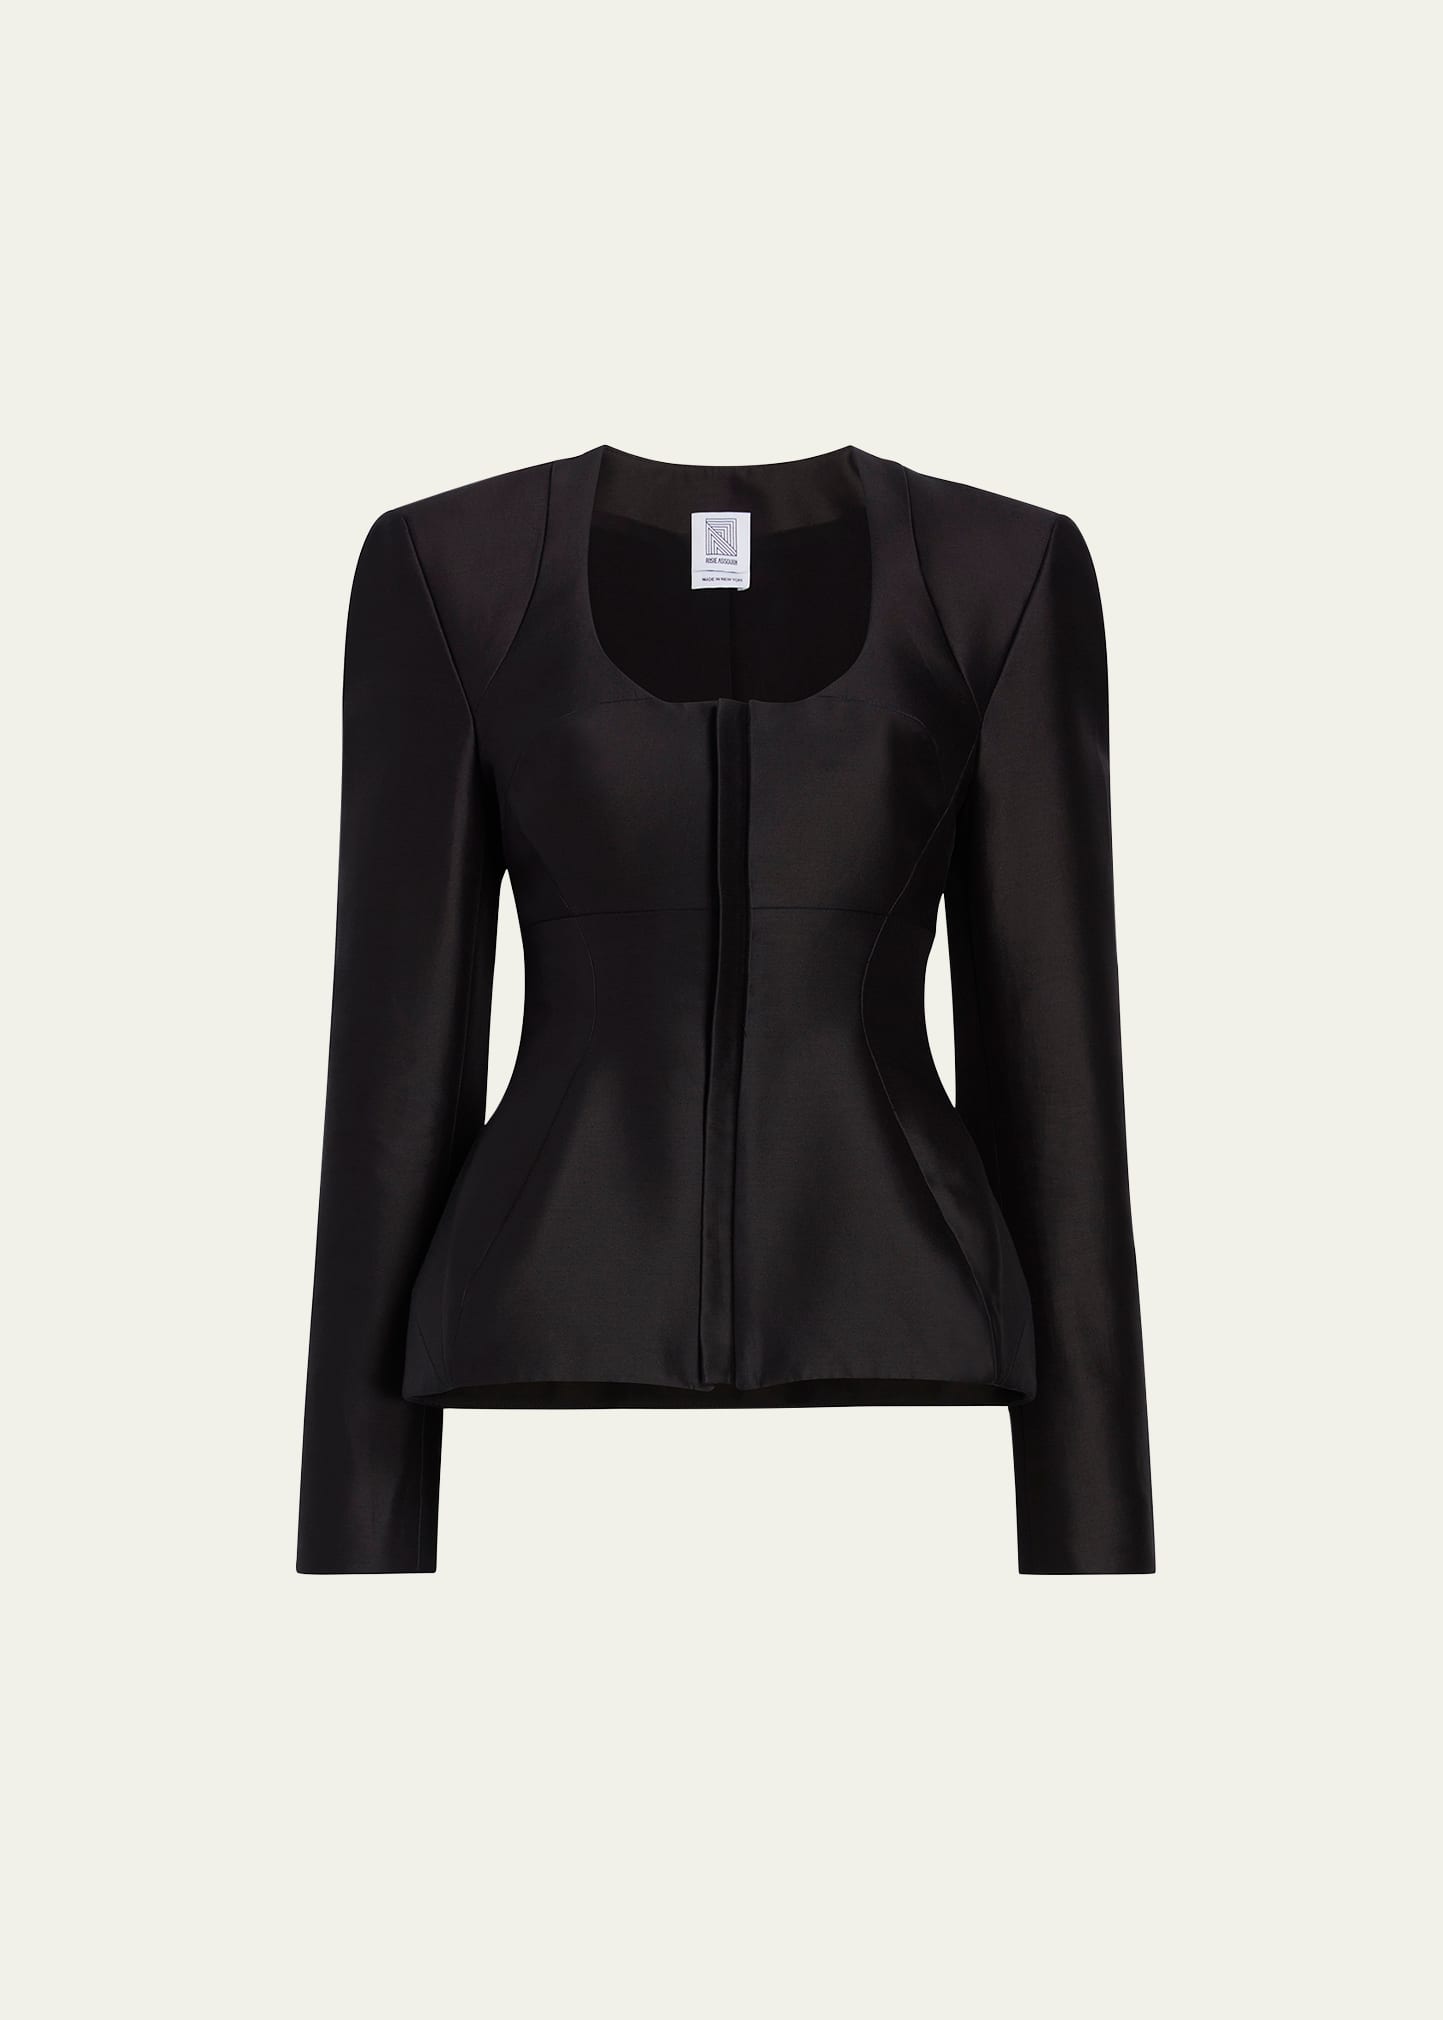 Rosie Assoulin U-turn Tailored Blazer In Black